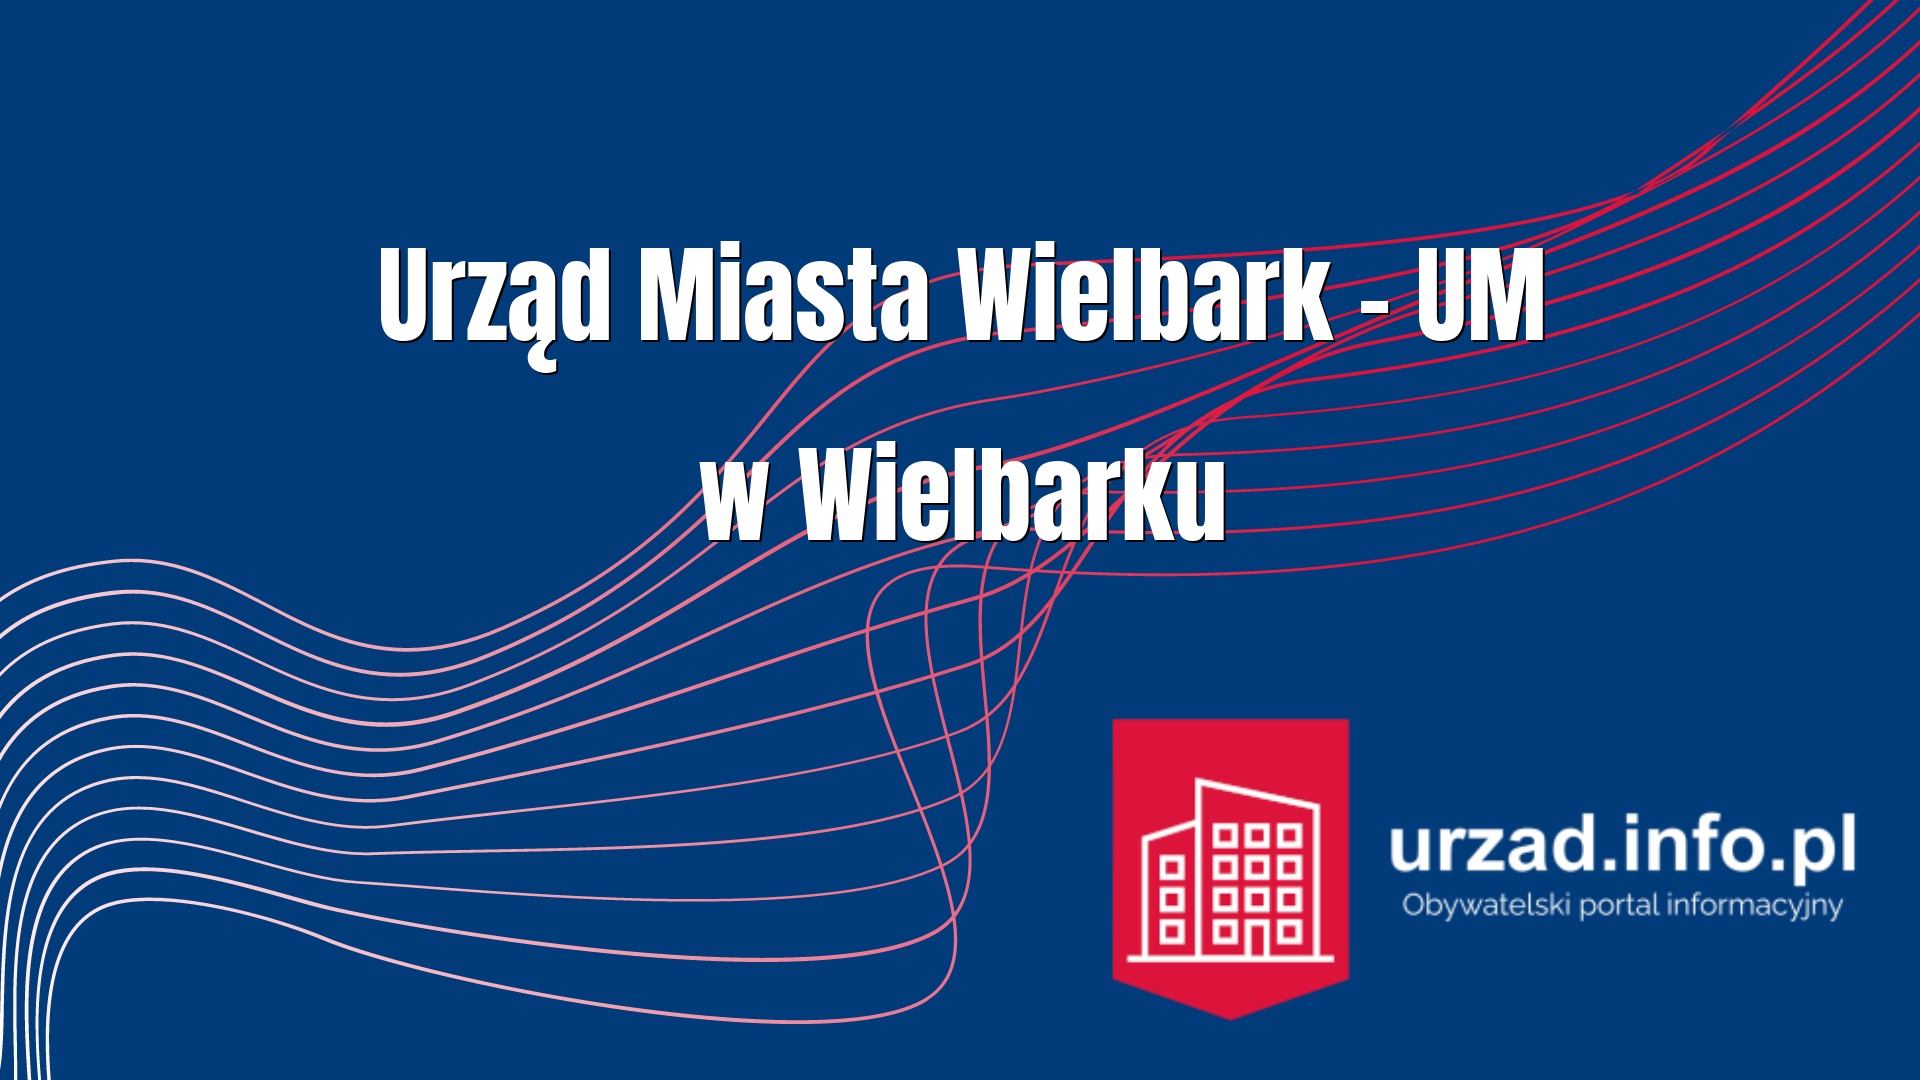 Urząd Miasta Wielbark – UM w Wielbarku